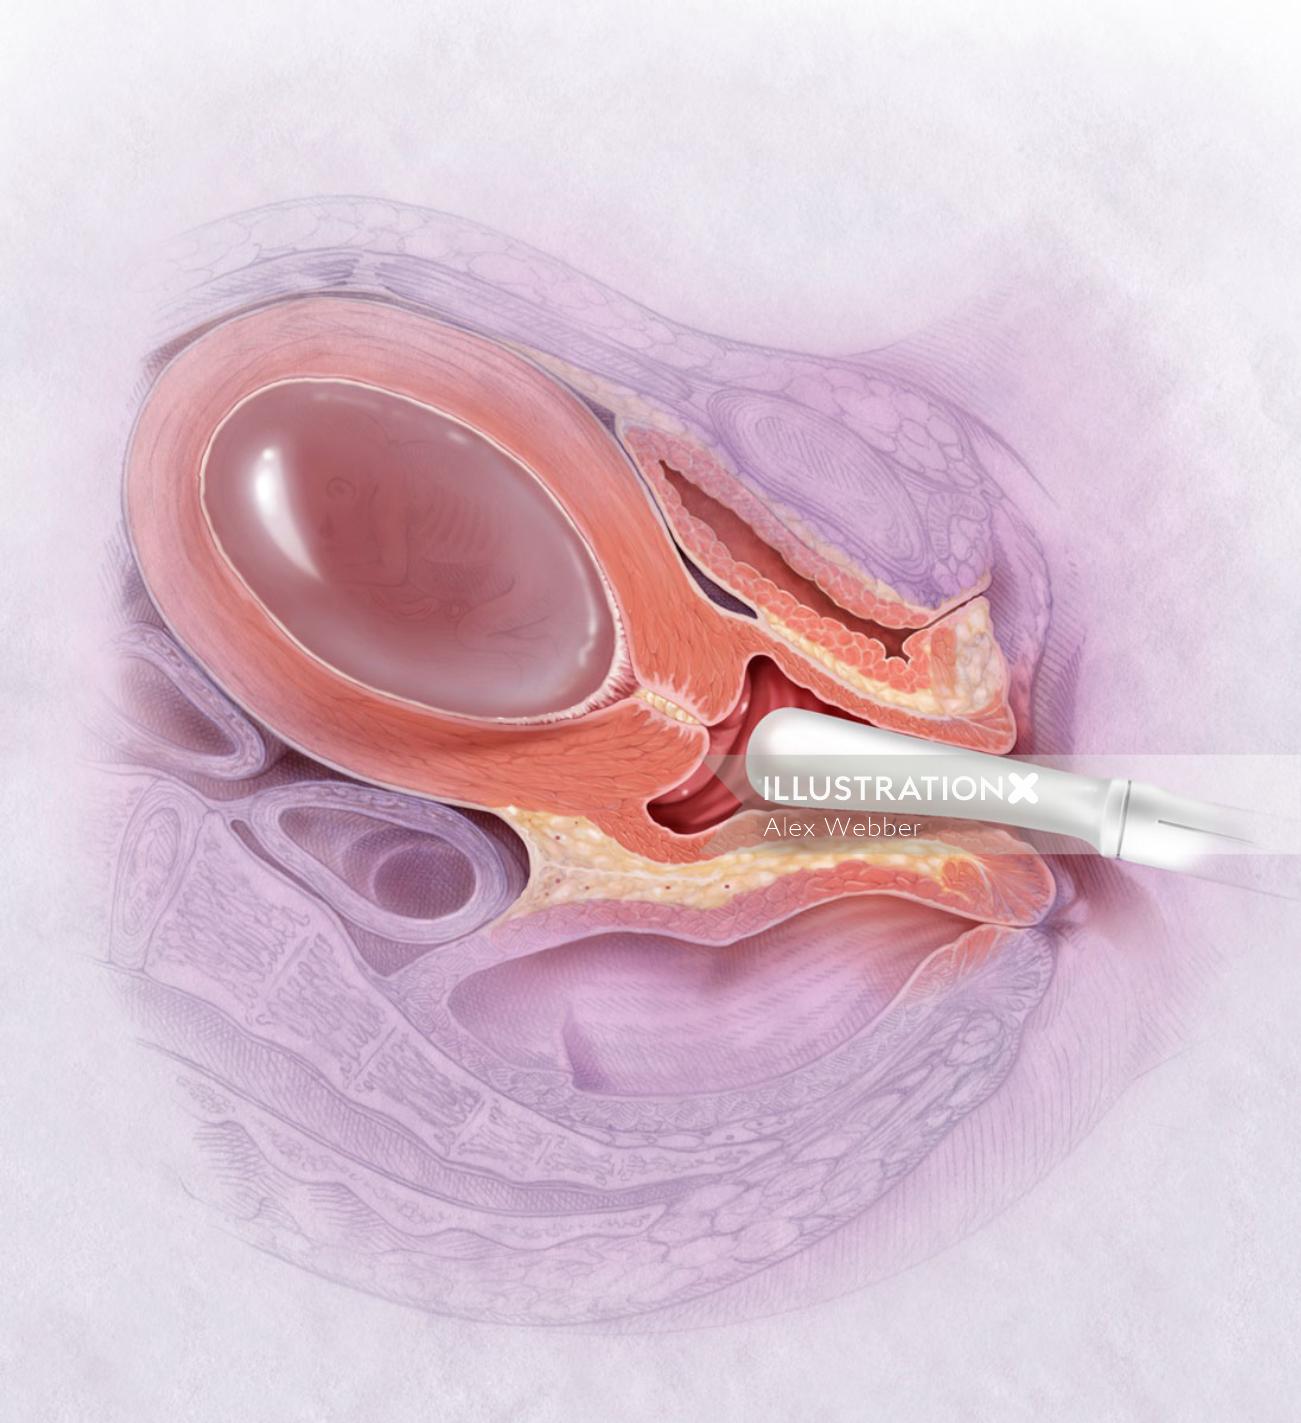 Ultrassonografia vaginal com 15/16 semanas de gravidez